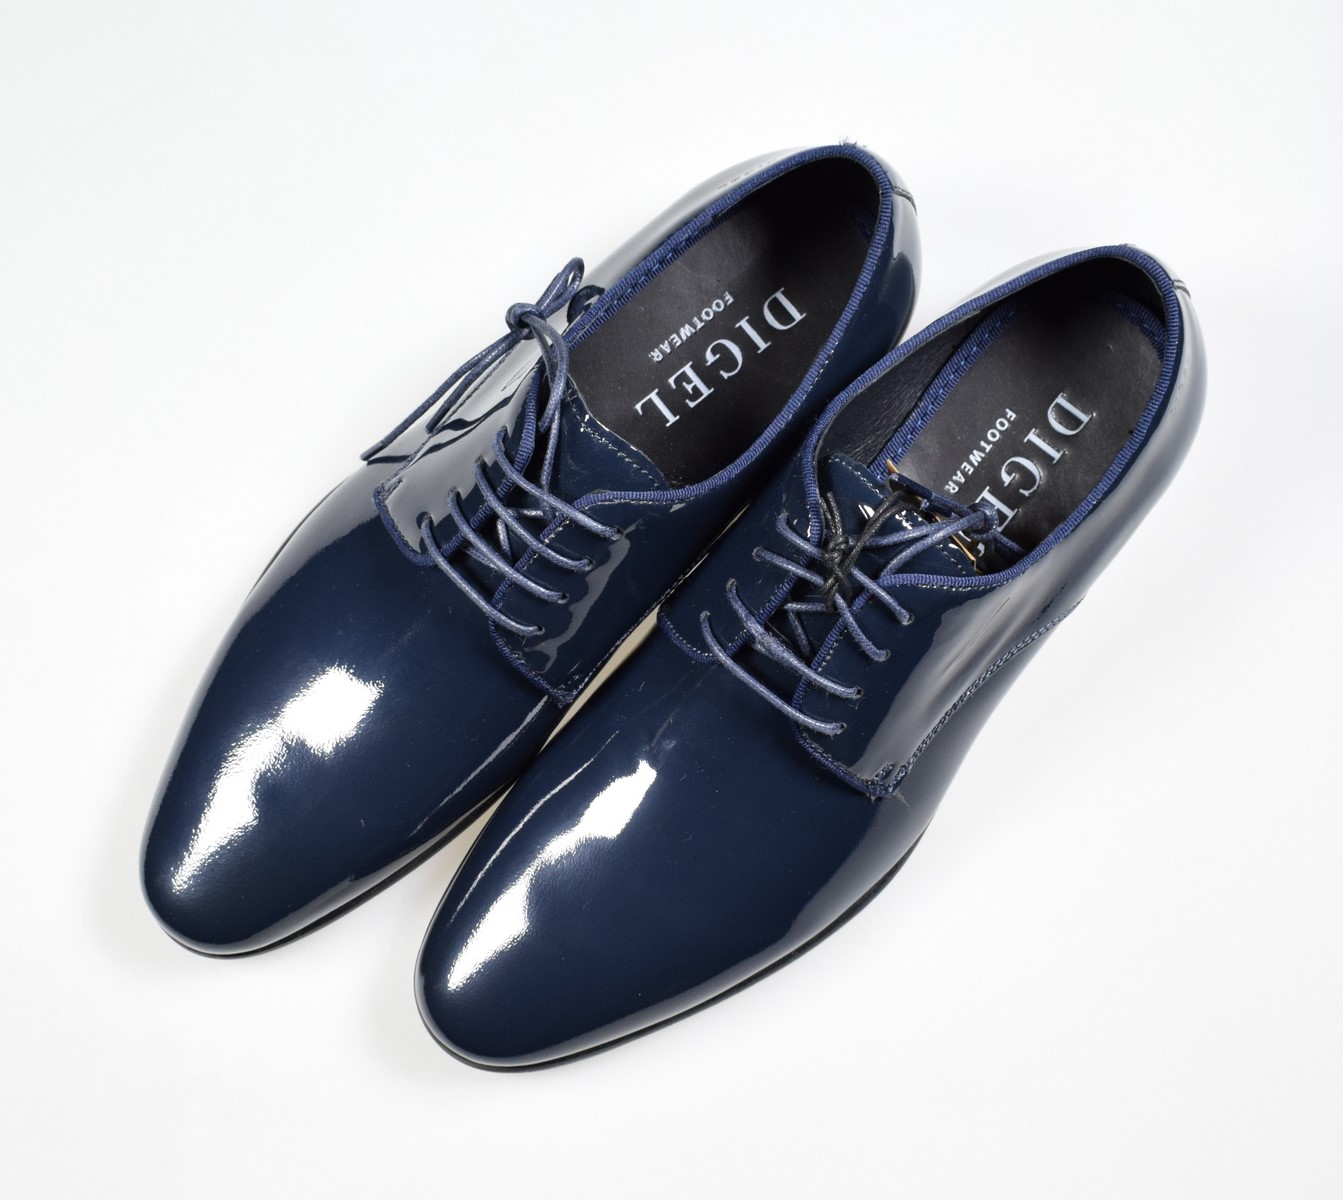 Vernice per scarpe per tingere di blu navy scarpe e accessori in pelle